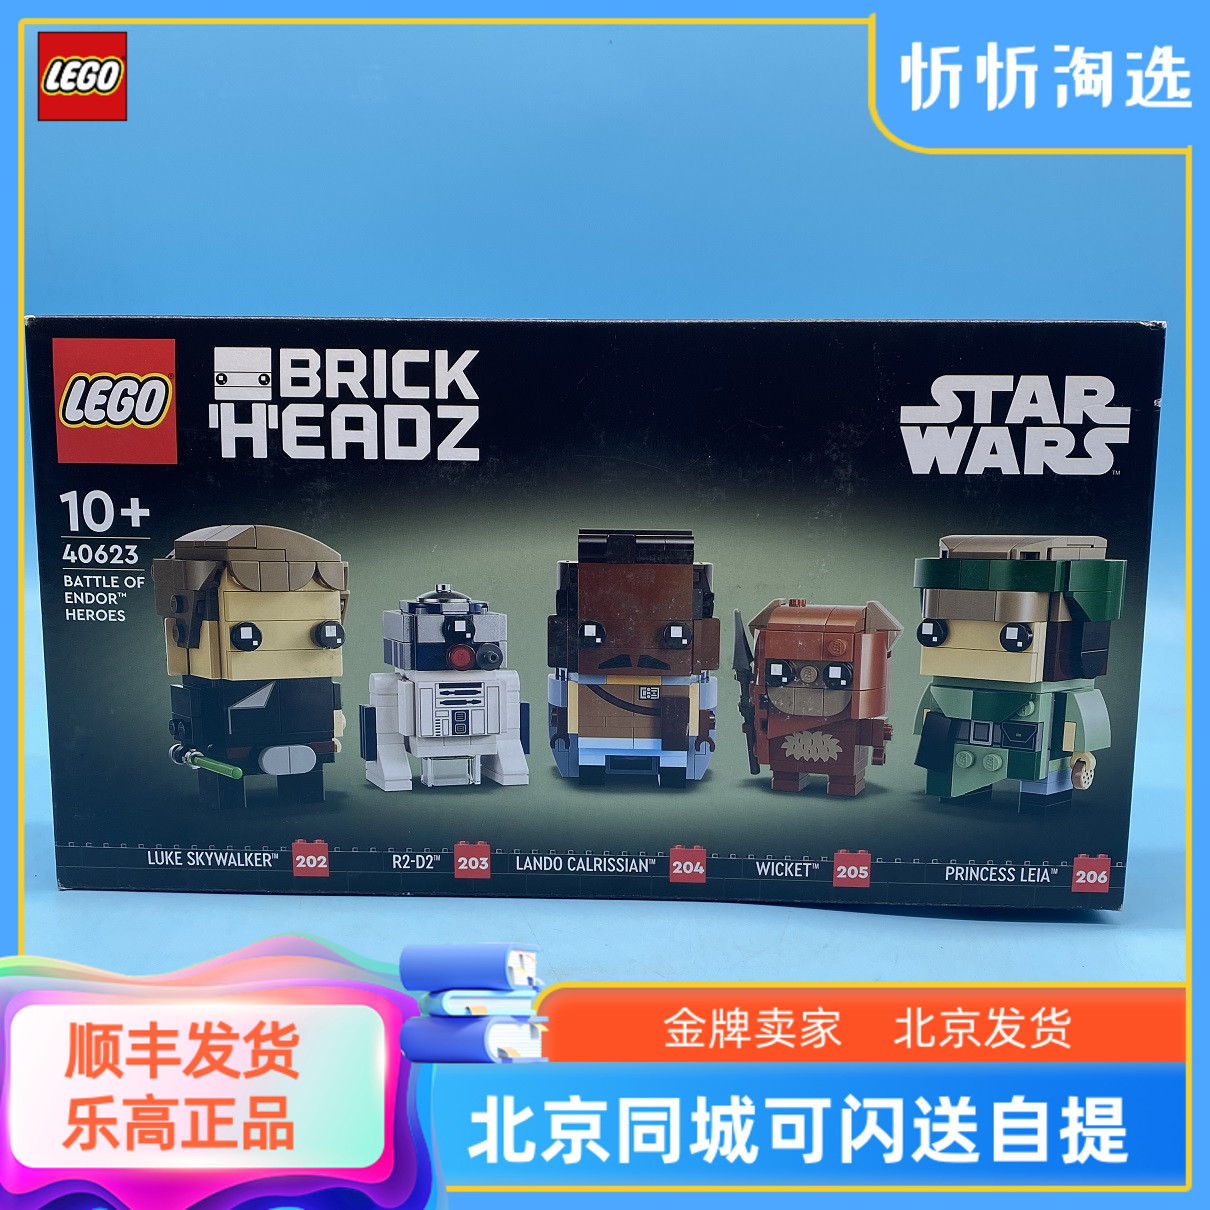 LEGO乐高方头仔系列40623恩多战役战斗英雄星球大战积木玩具